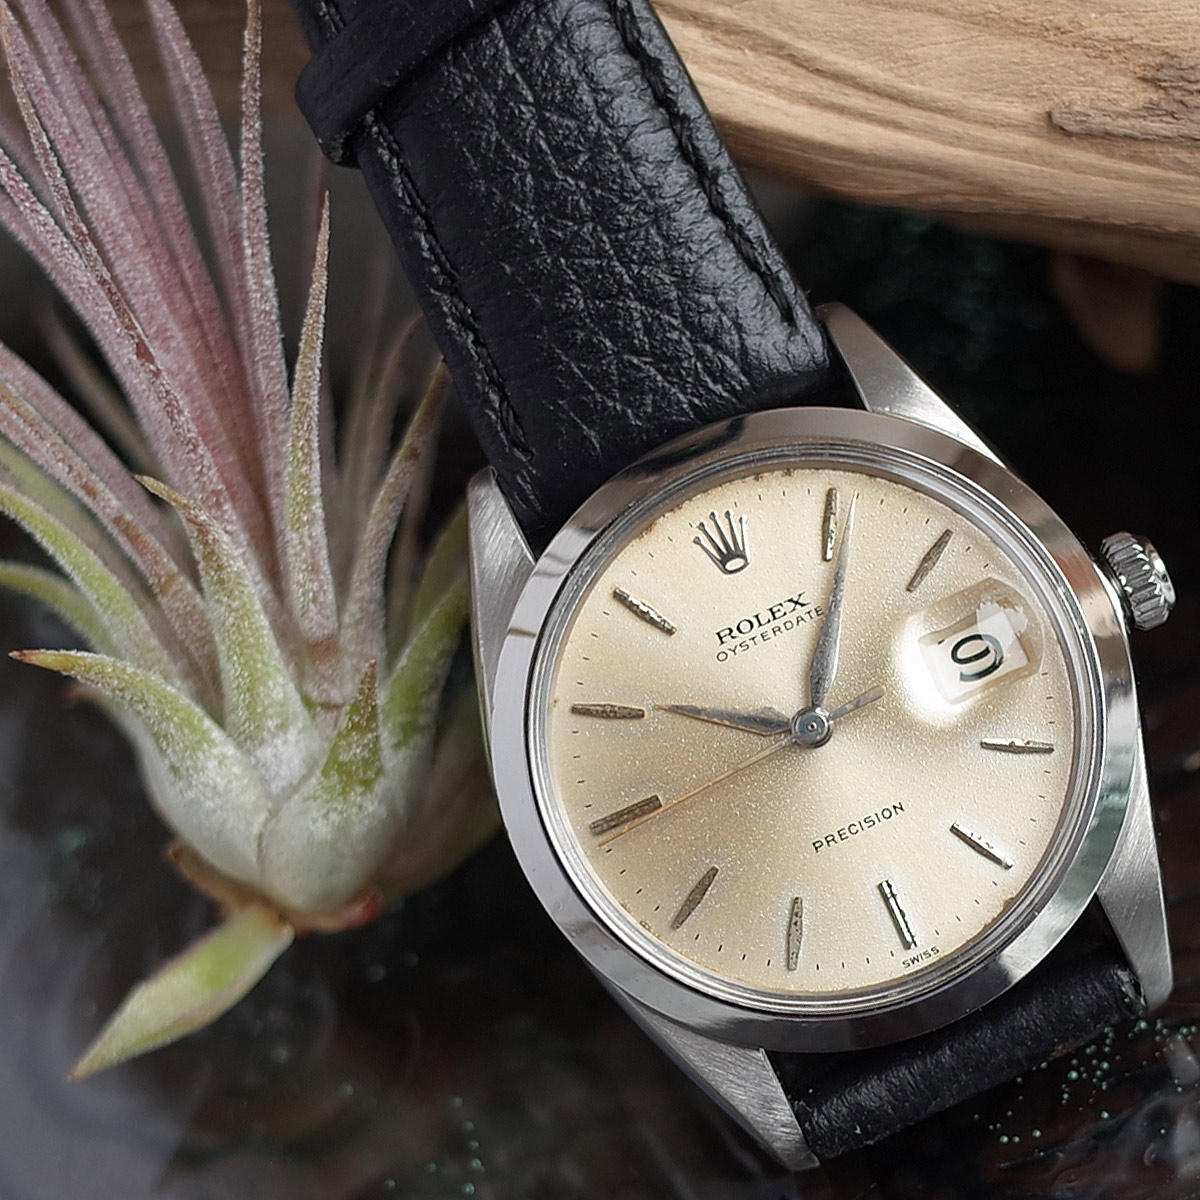 ロレックス 6694 1964年製 オイスターデイト プレシジョン SS メンズ 手巻き 腕時計 cal.1215 アンティーク ROLEX  【中古】【送料無料】【中古】 | ブランドショップパリノ